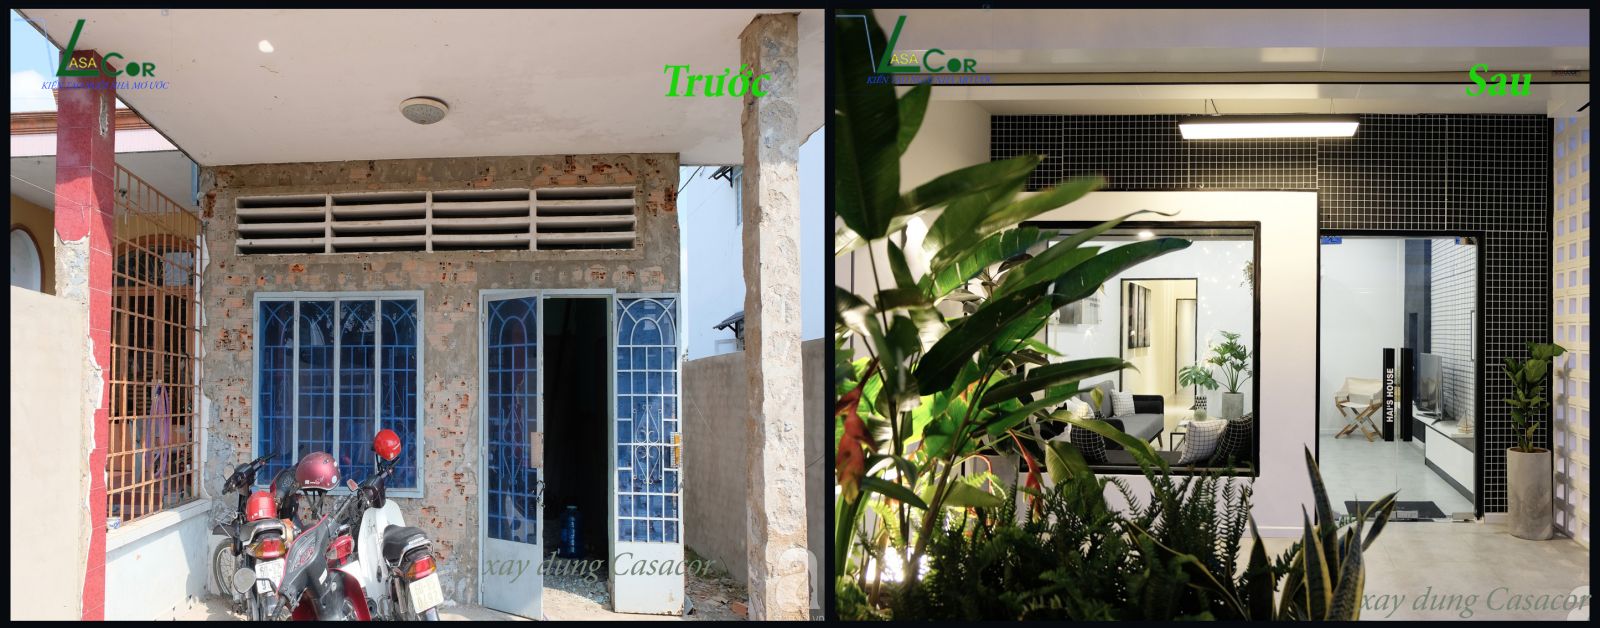 Hình ảnh trước và sau khi sửa chữa nhà